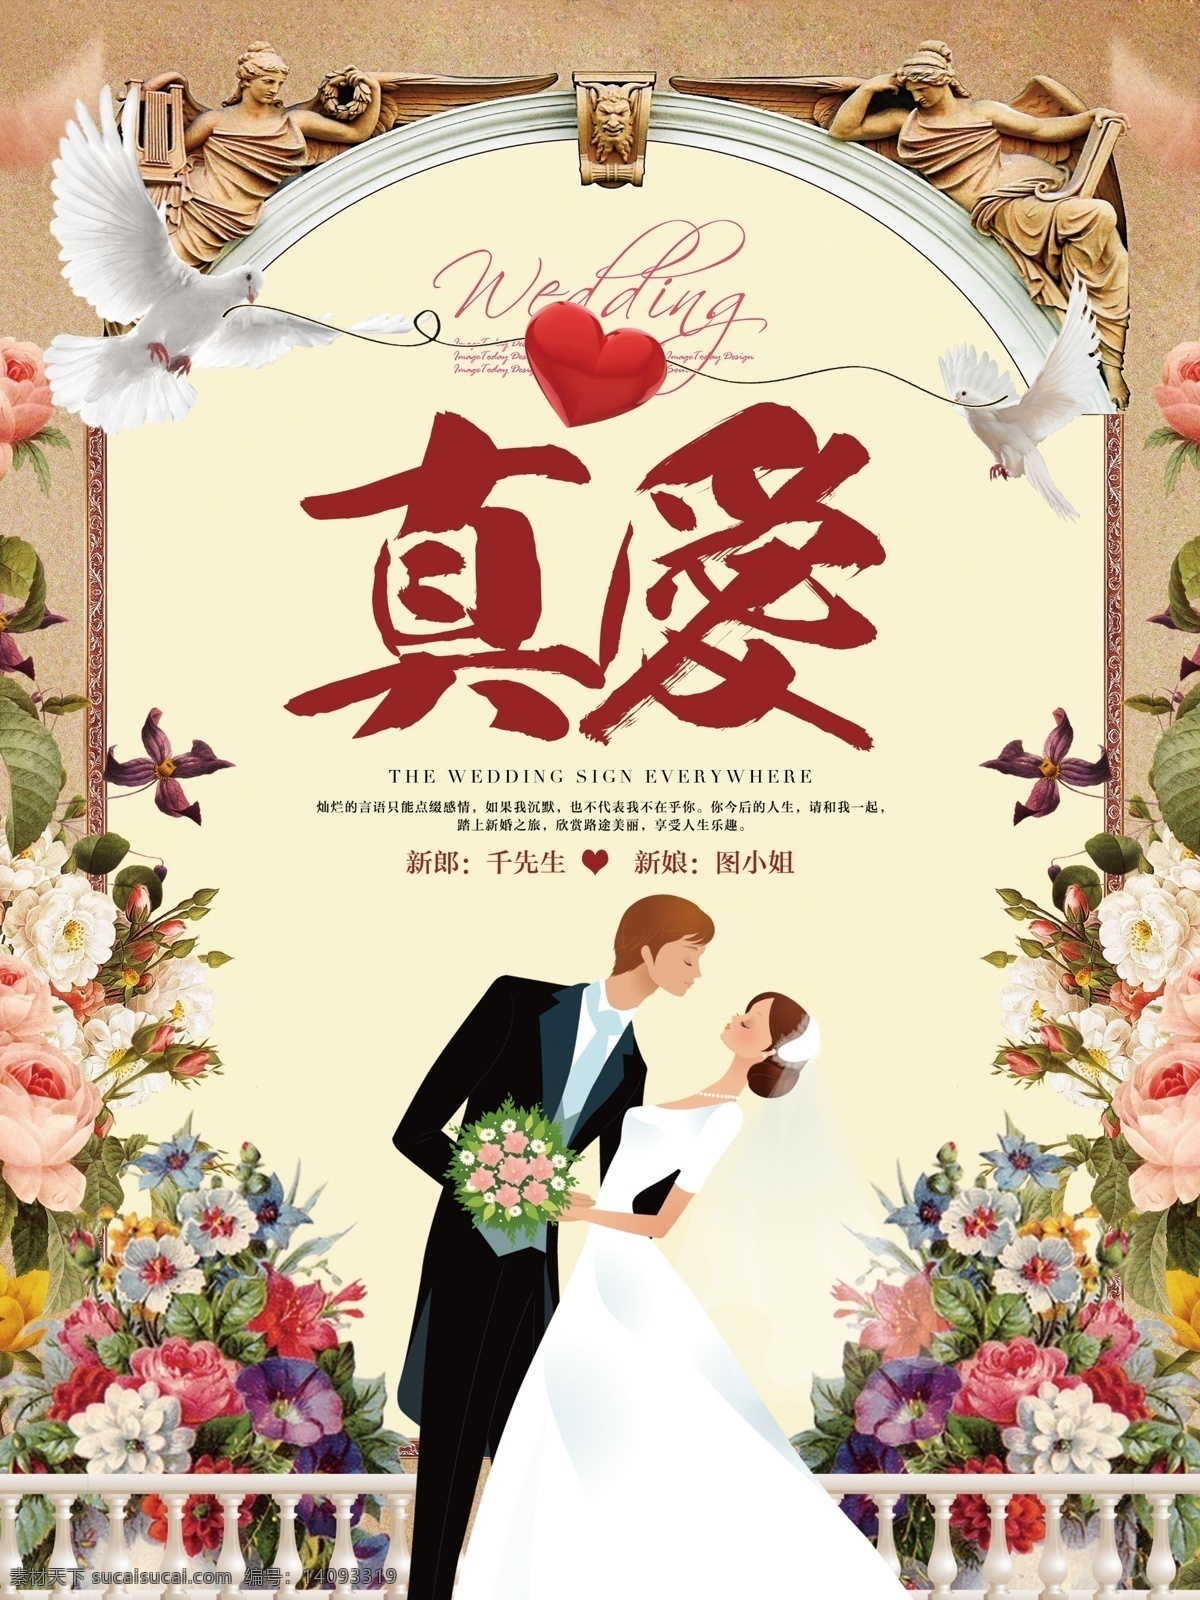 清新 浪漫 唯美 婚礼 结婚 婚庆 宣传海报 展板 鲜花 宣传 海报